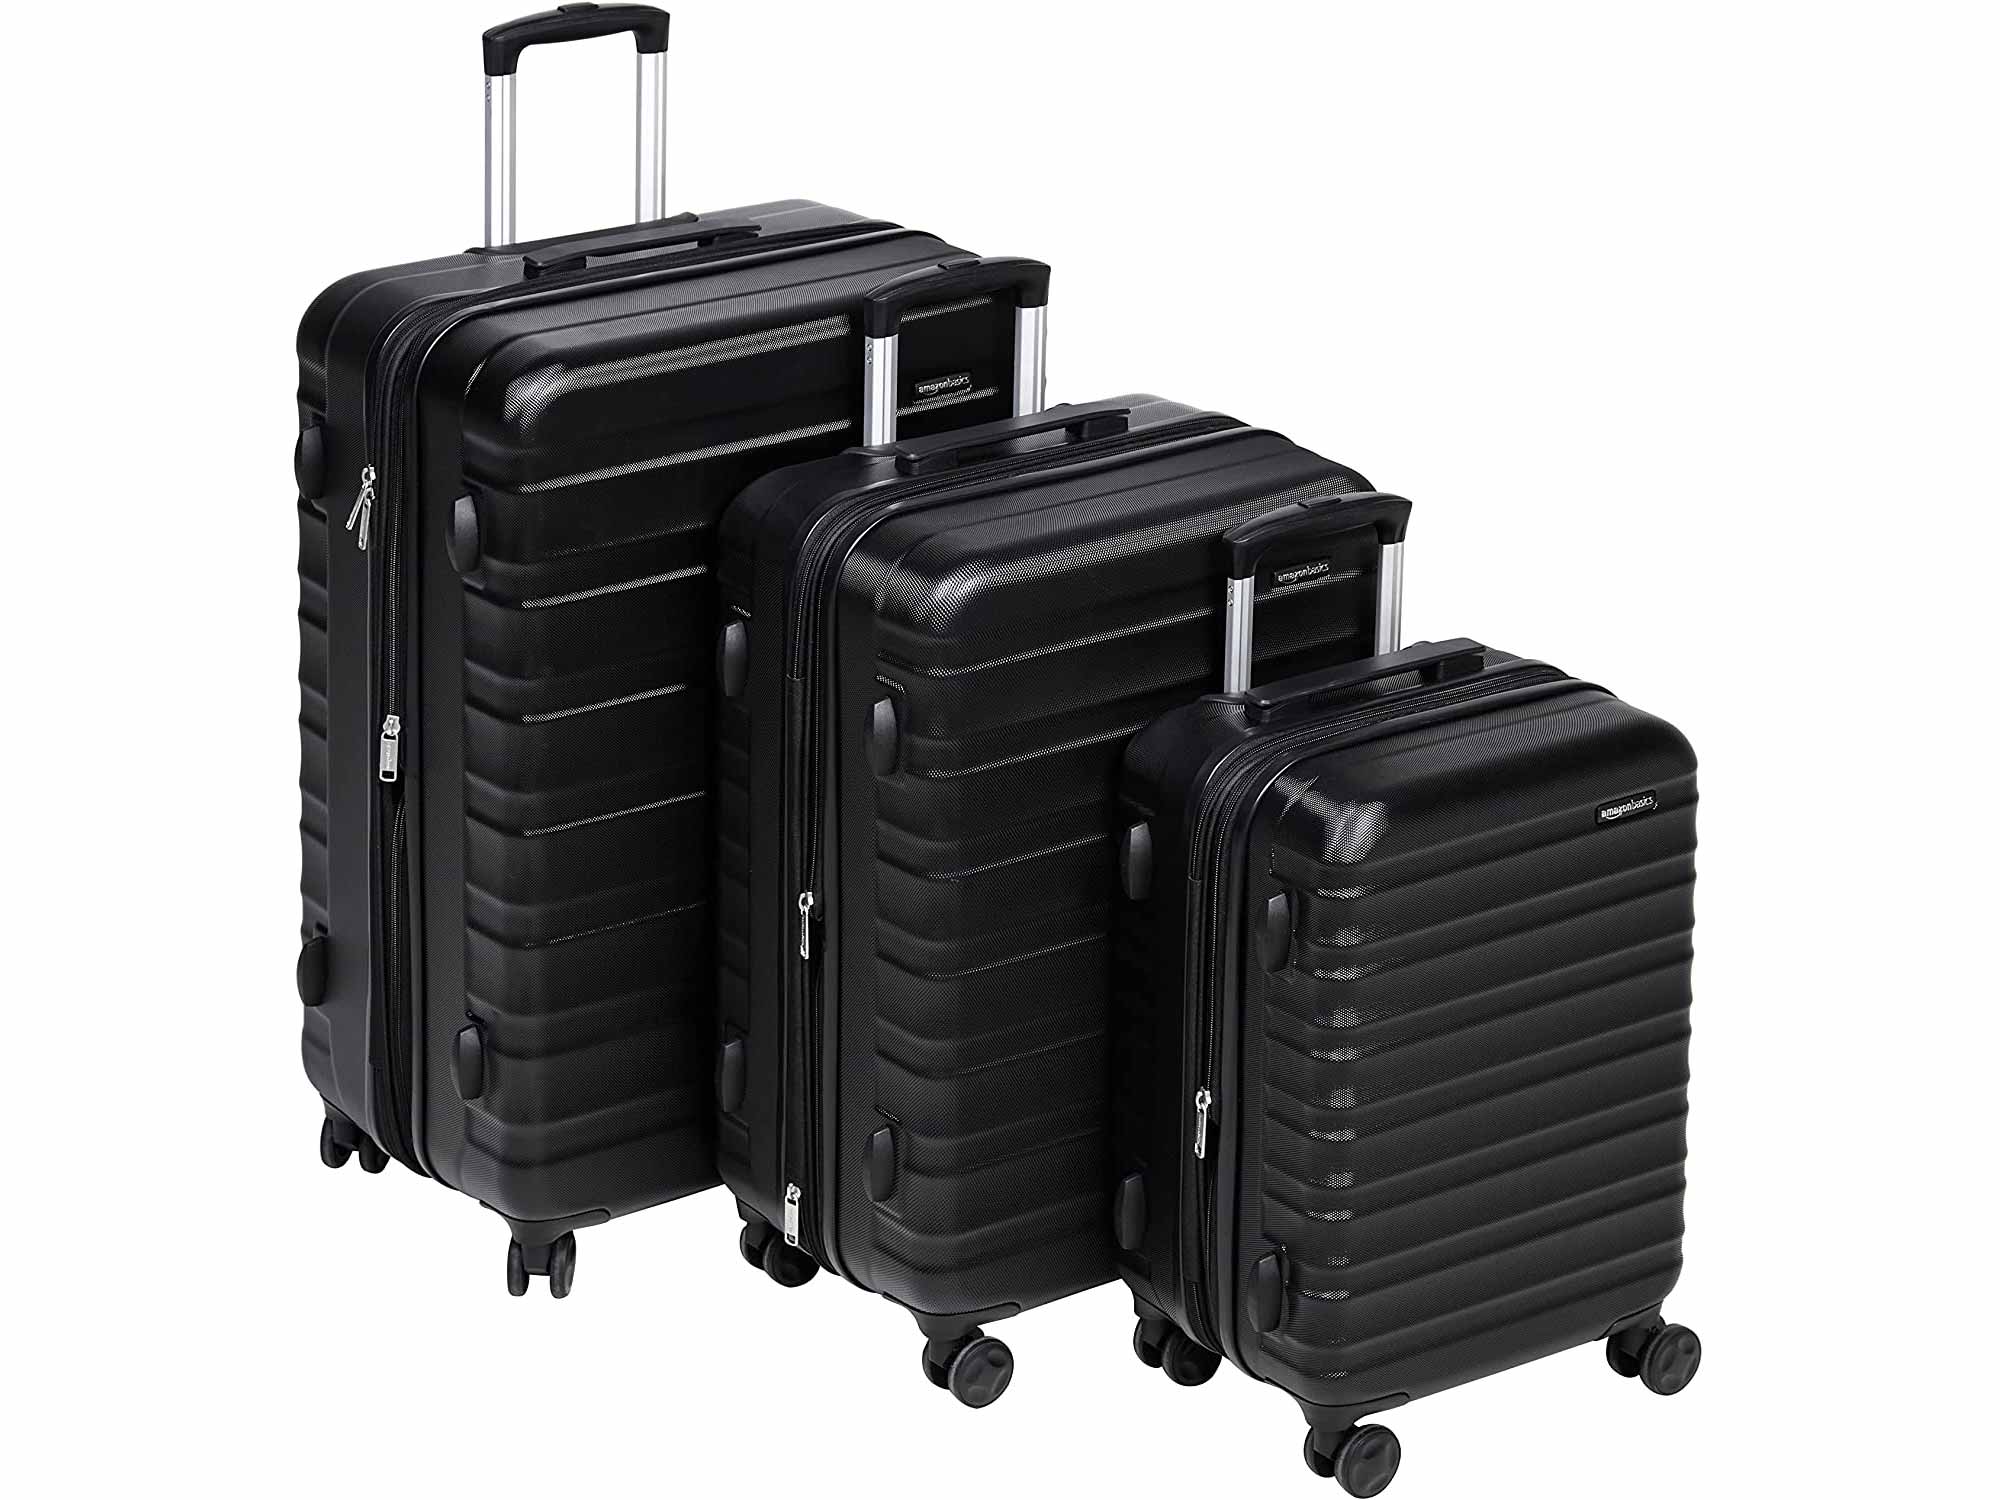 AmazonBasics Hardside Spinner Suitcase Luggage - Expandable with Wheels - 3-Piece Set, Black